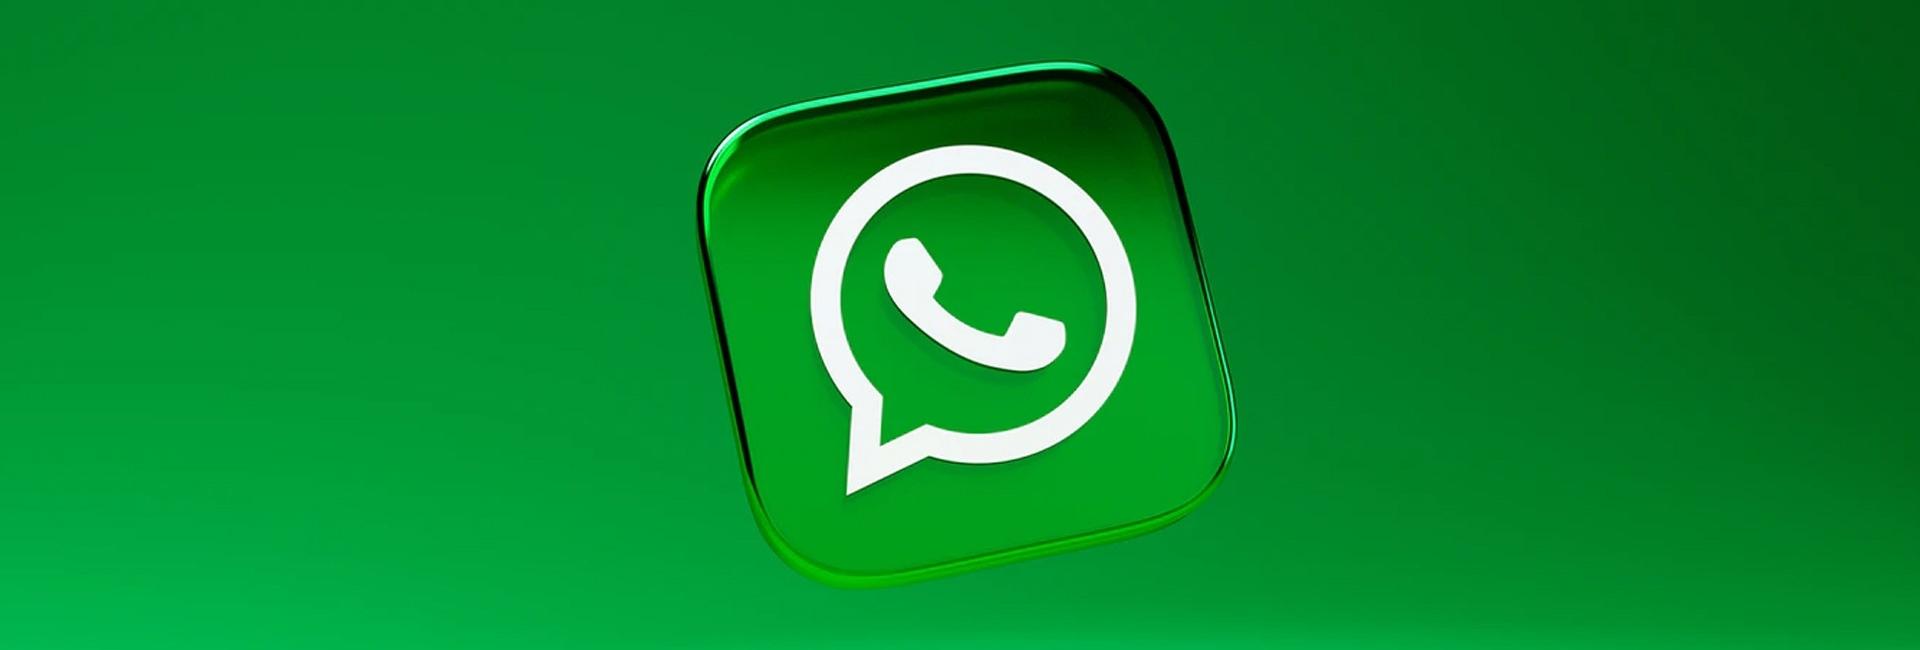 O recurso que facilita a comunicação com mais pessoas no WhatsApp pode espalhar vírus com mais facilidade